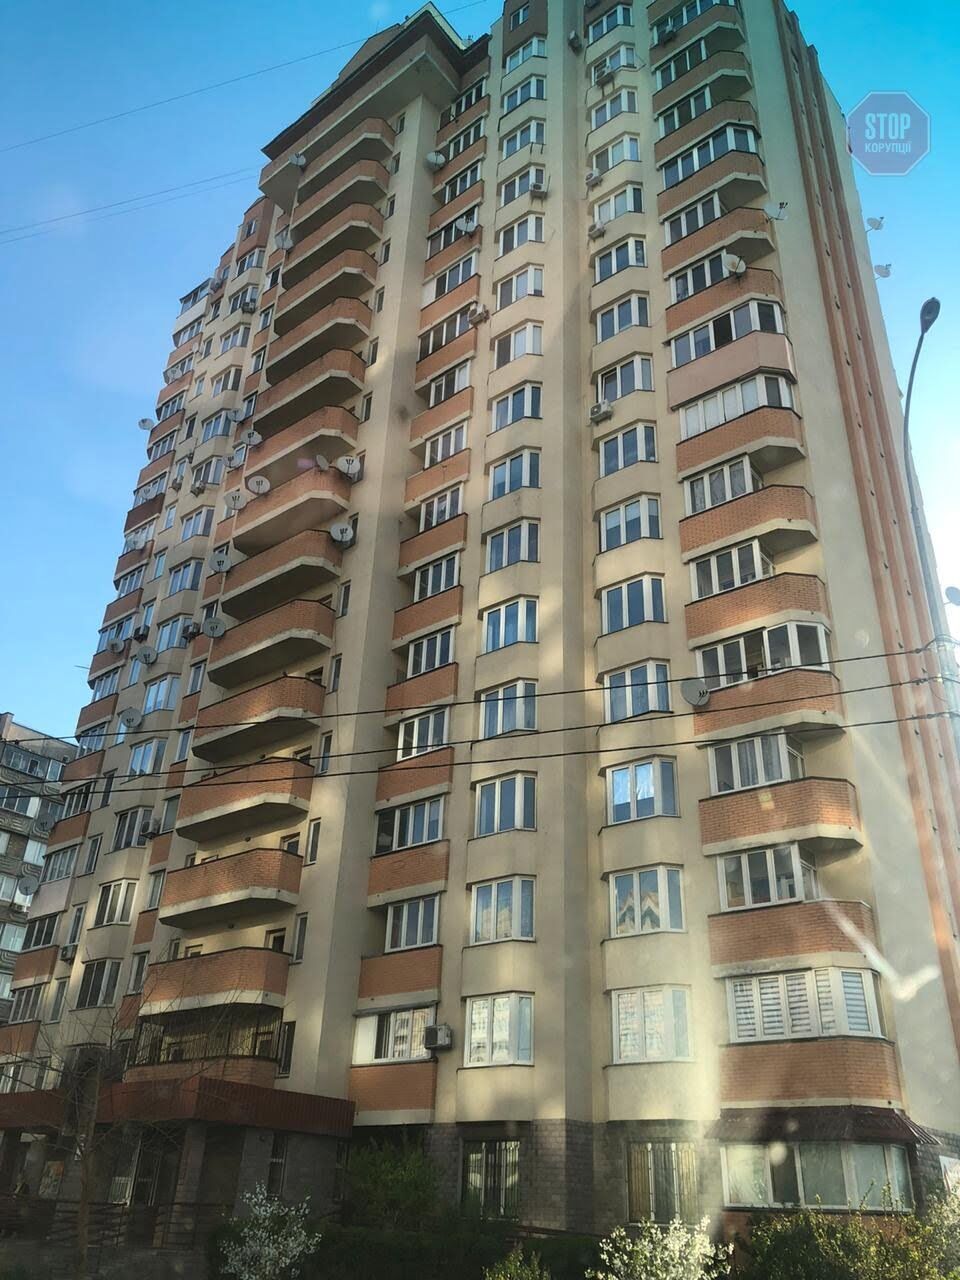 Дом на улице Алматынской, где живет Валерия